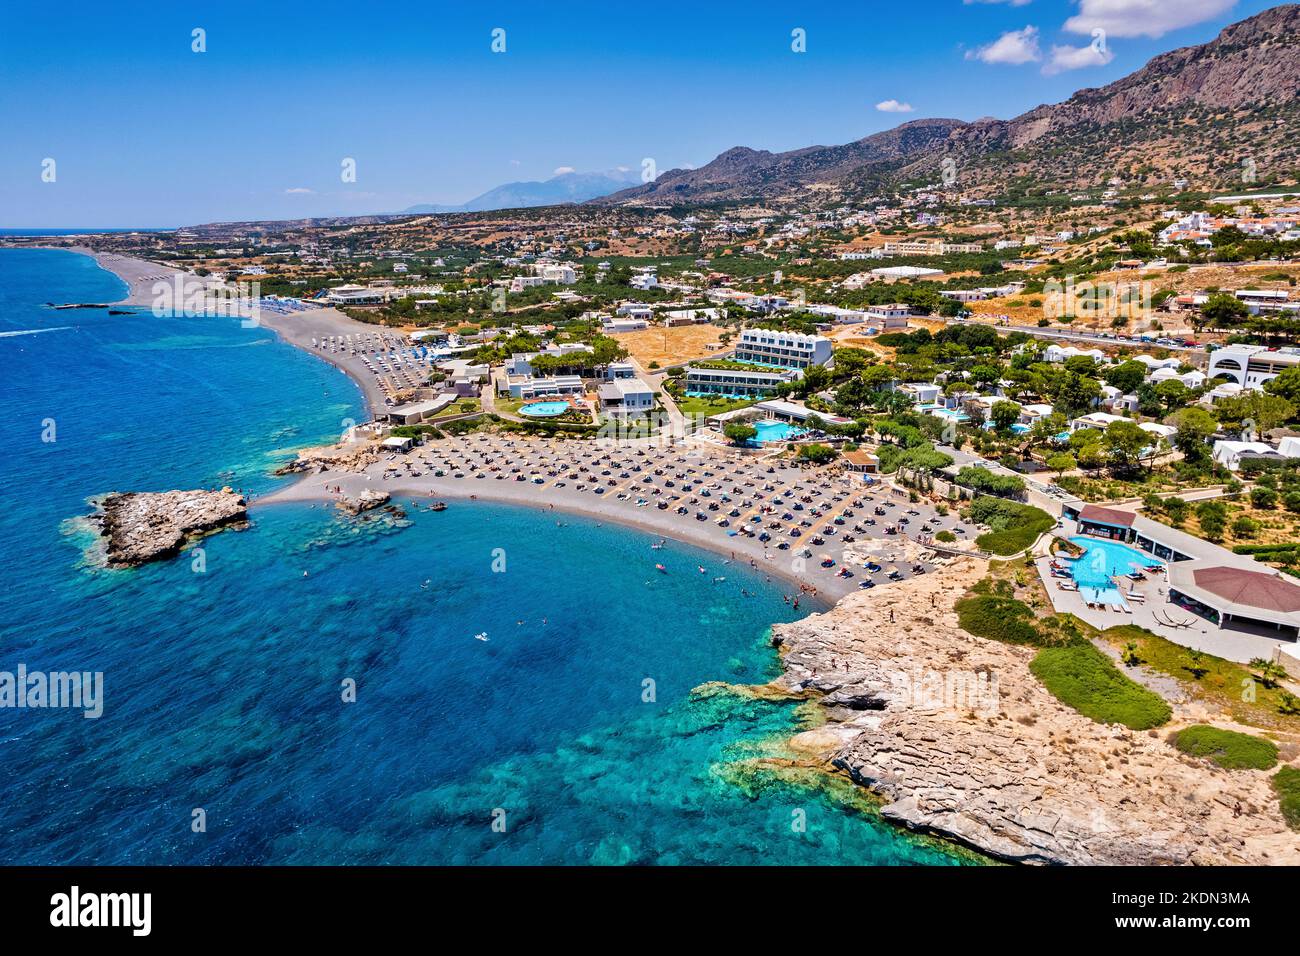 Vue aérienne (drone) de la plage de la baie de Kakkos (drapeau bleu), entre les villages de Ferma et Koutsounari, Ierapetral, Lassithi, Crète, Grèce. Banque D'Images